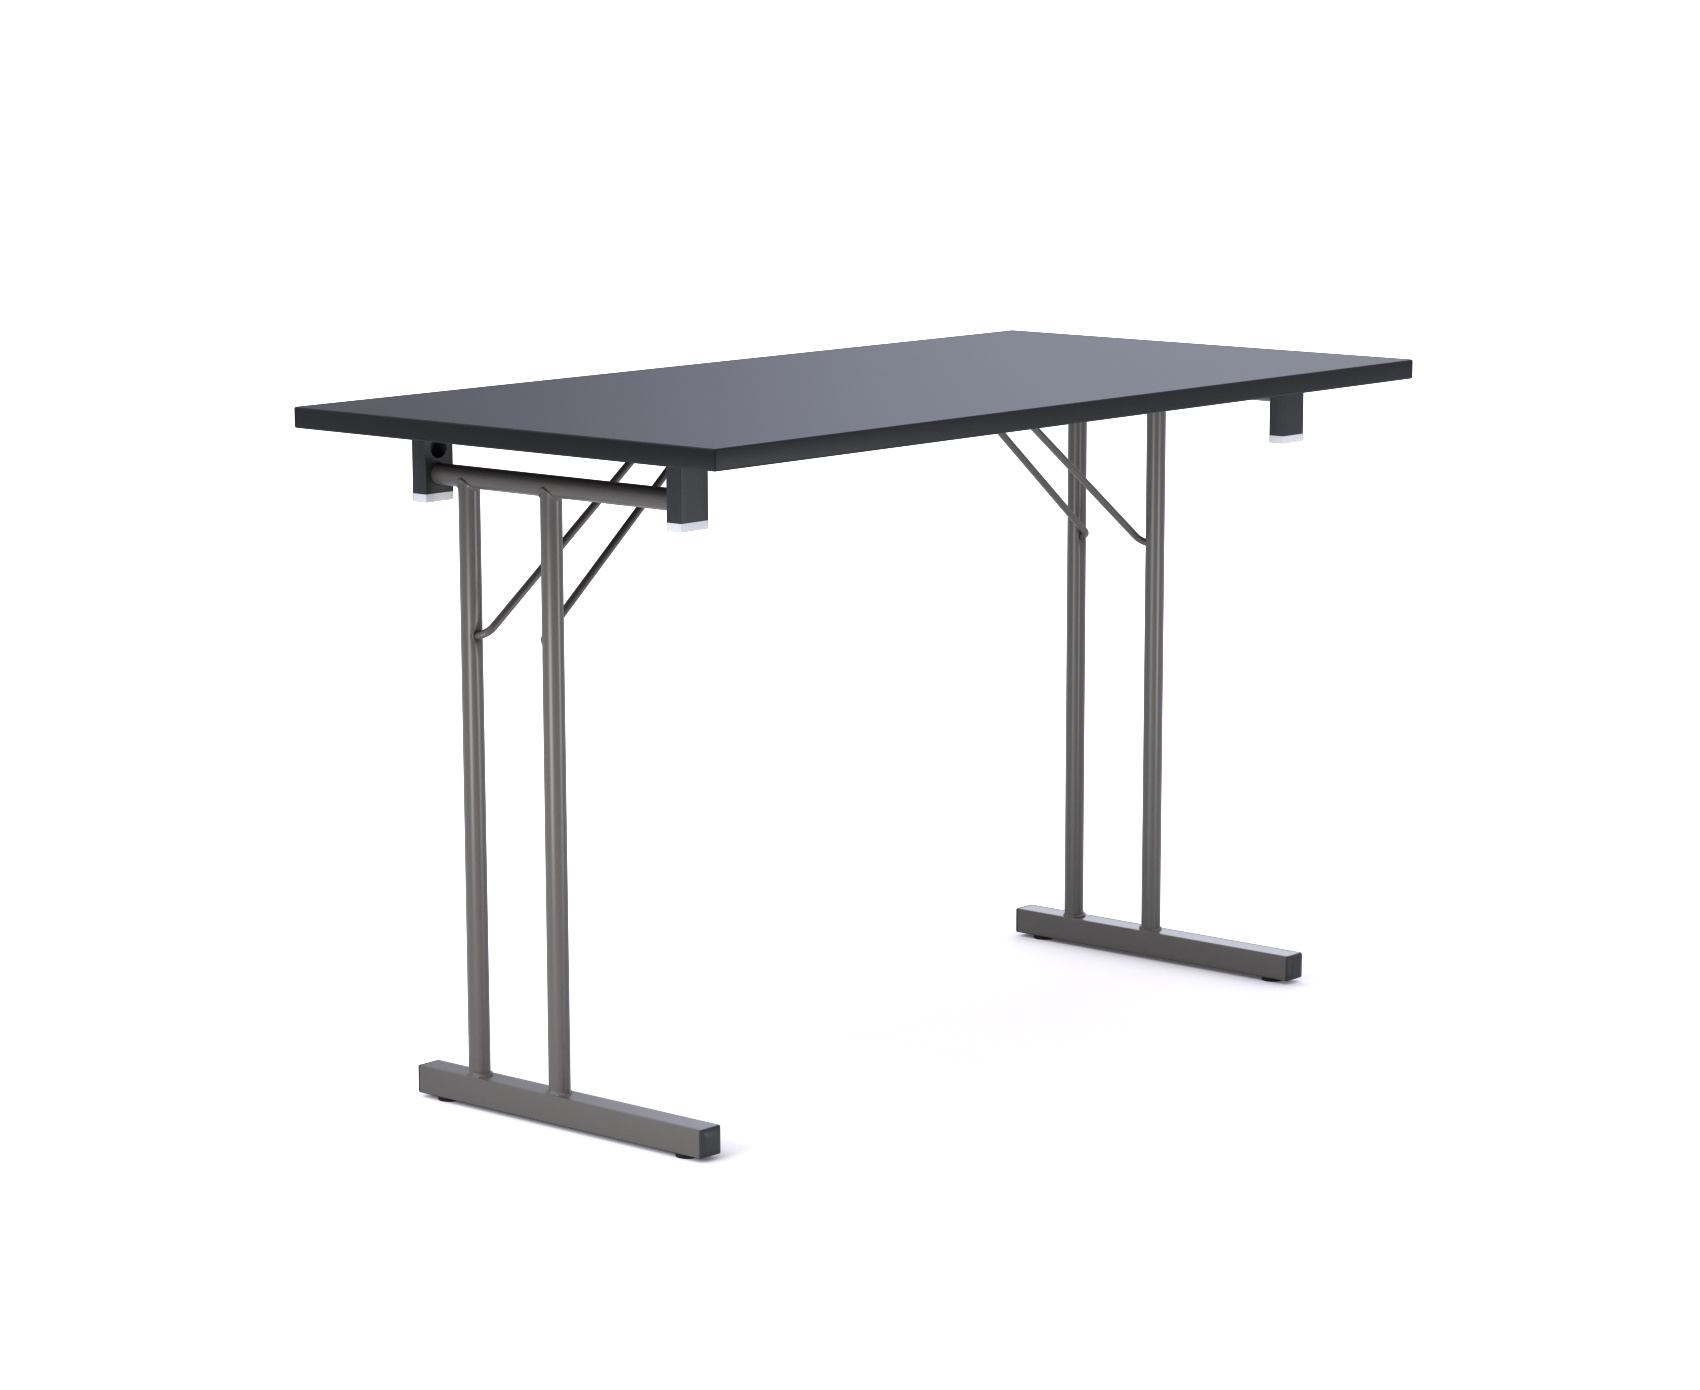 Standard Folding Table 4688-54 Konferenztisch, 120 x 60 cm